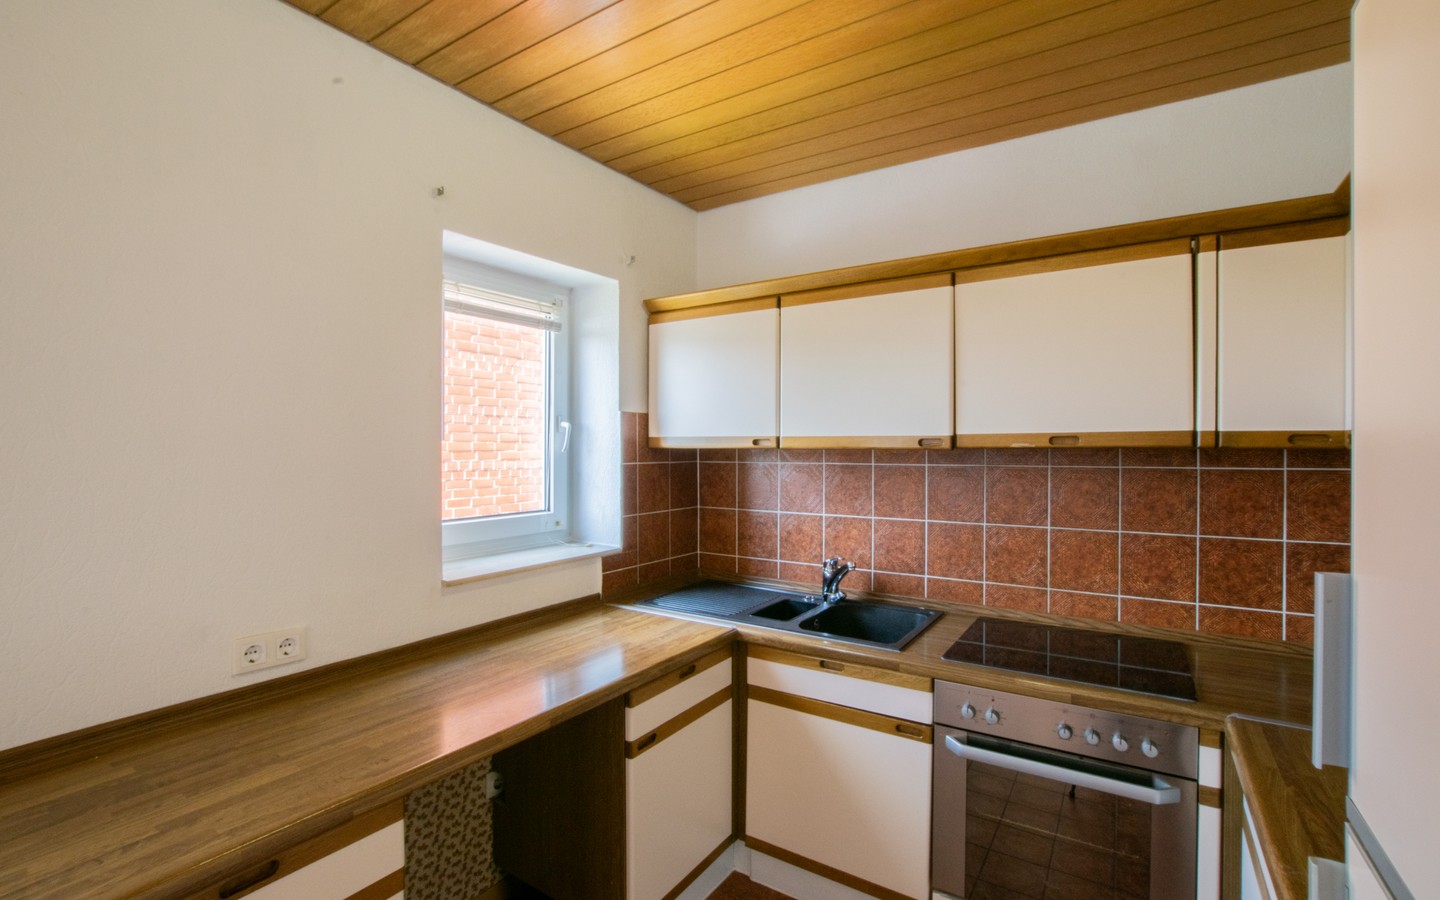 Küche - Nussloch: Geräumige 3-Zimmer-Wohnung mit Loggia und traumhafter Aussicht